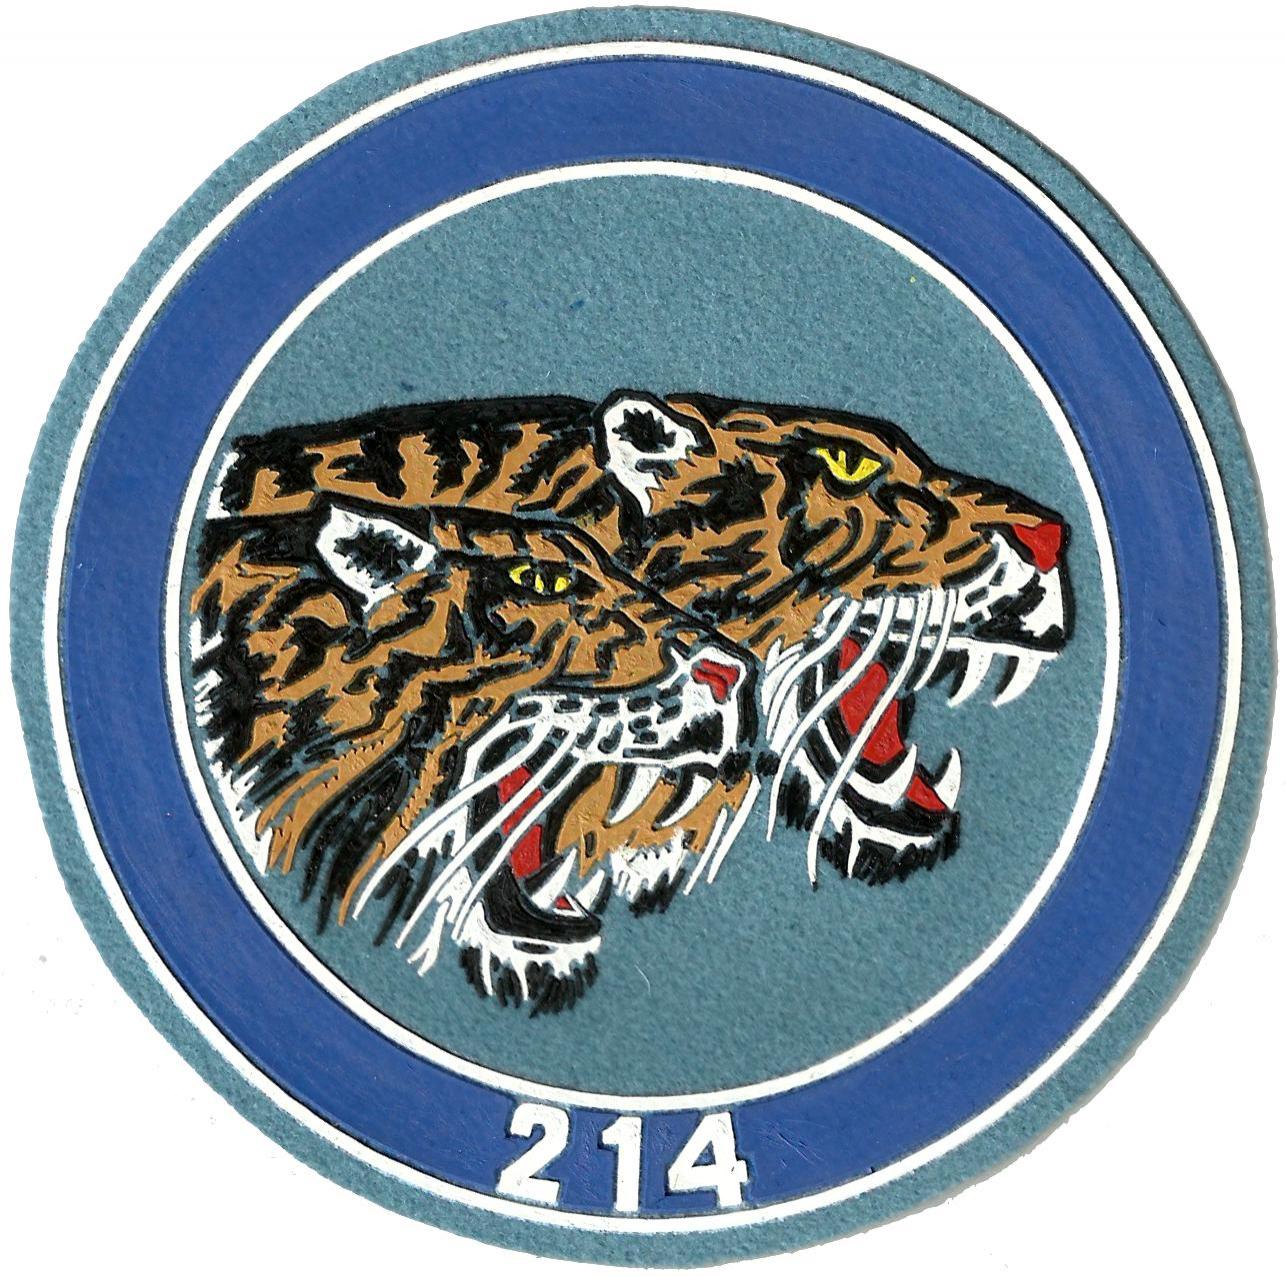 Ejército del aire escuadrón 214 parche insignia emblema distintivo